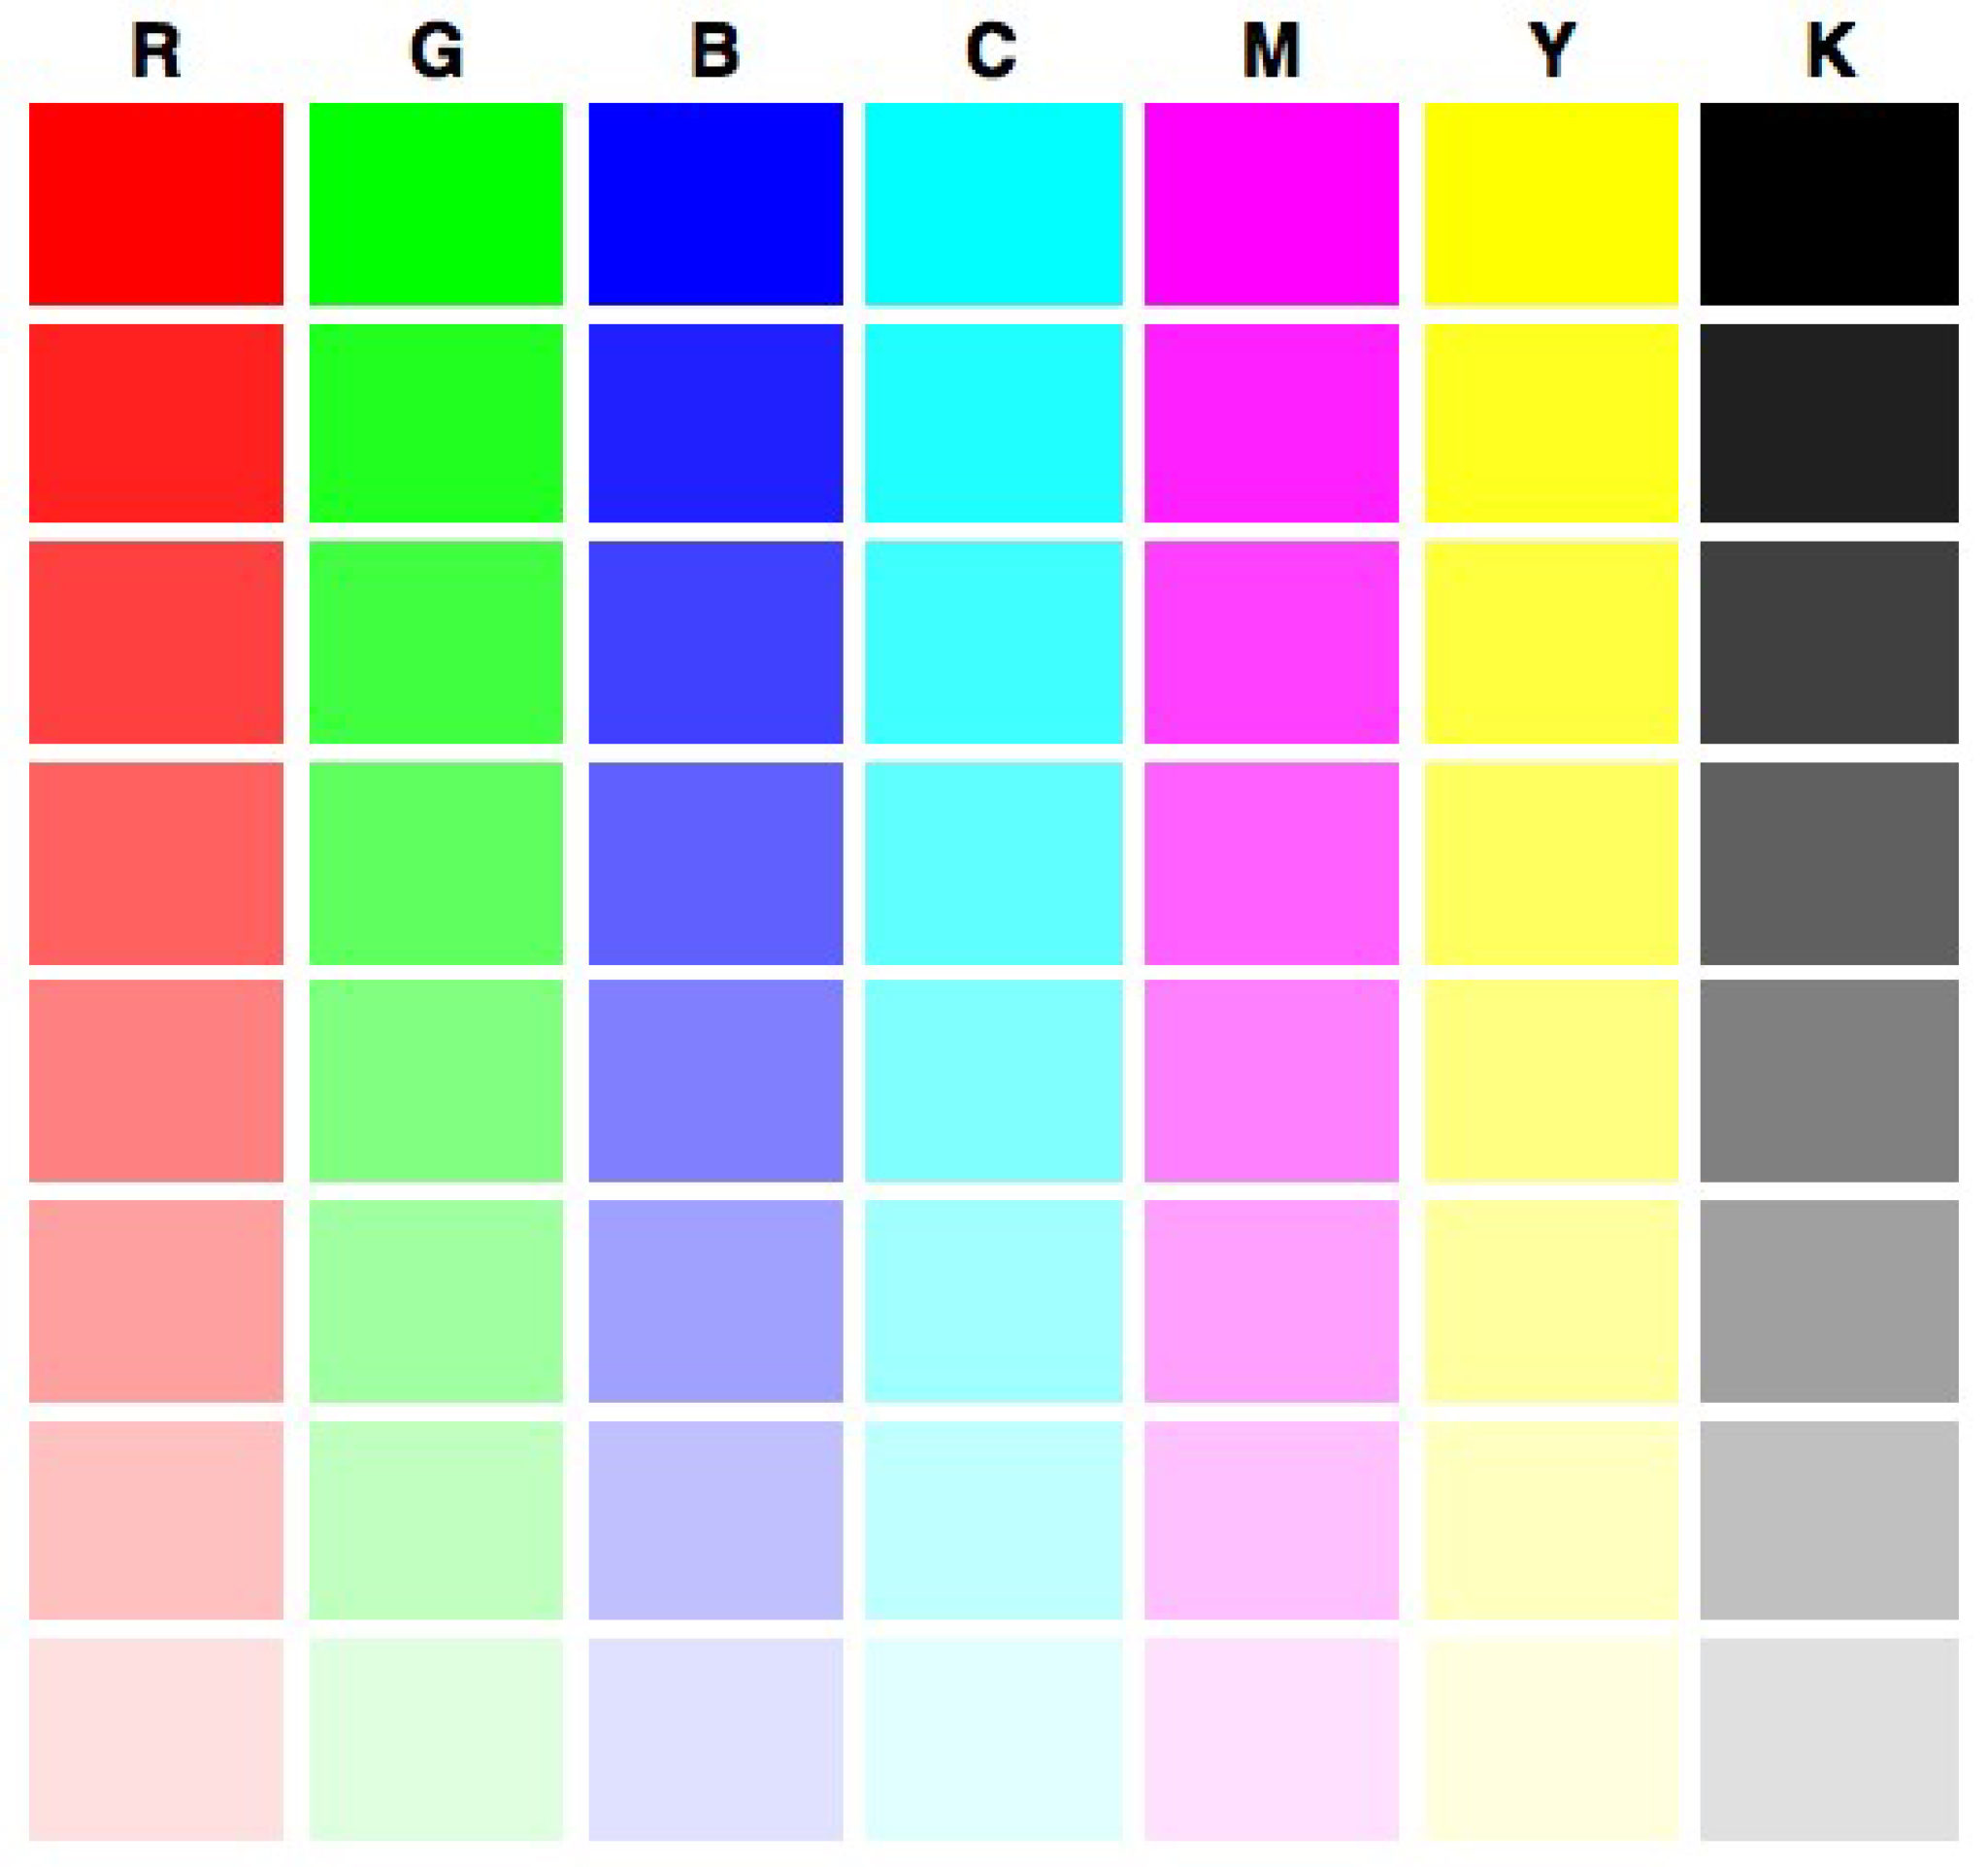 Красочные таблицы. Тестовая страница для принтера Epson l800. Тест принтера Эпсон 6 цветов. Тест принтера Эпсон 4 цвета. Проверочная таблица цветов для принтера Эпсон.